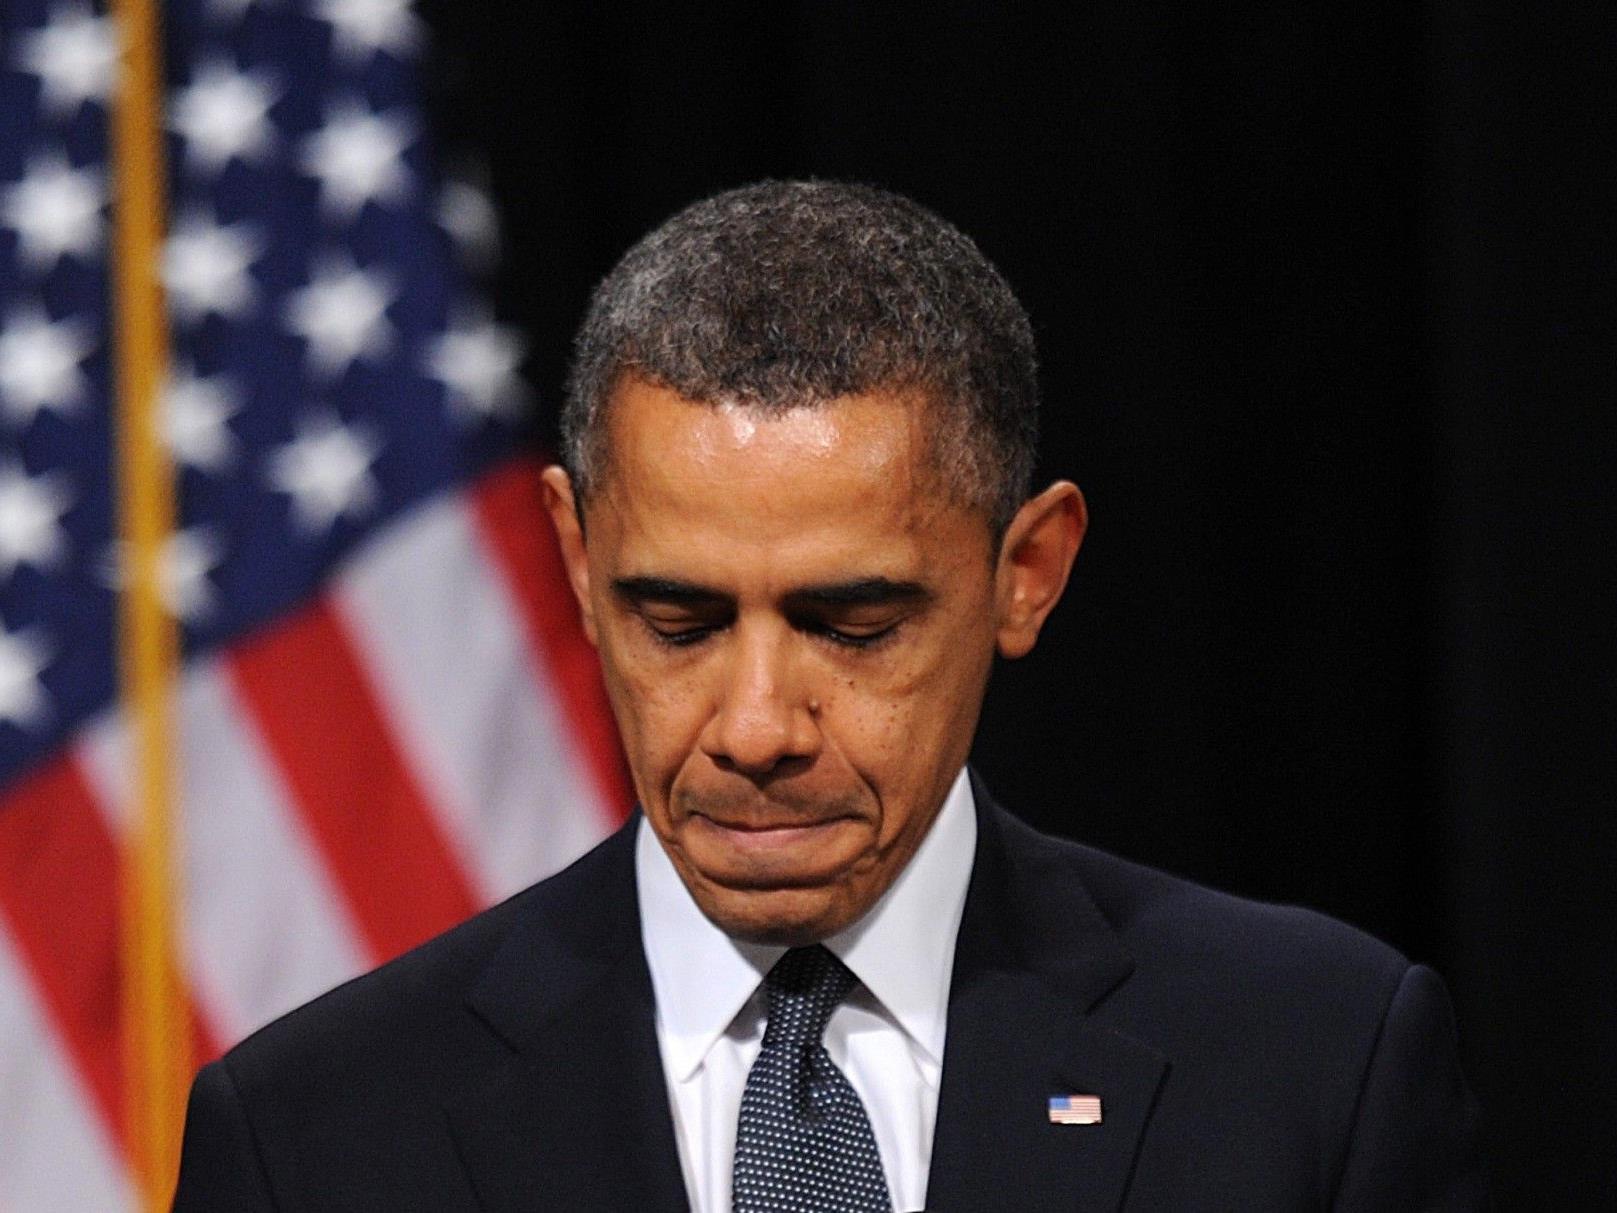 Präsident Obama sprach nach Massaker an US-Schule vor trauernden Angehörigen und Gemeindemitgliedern.